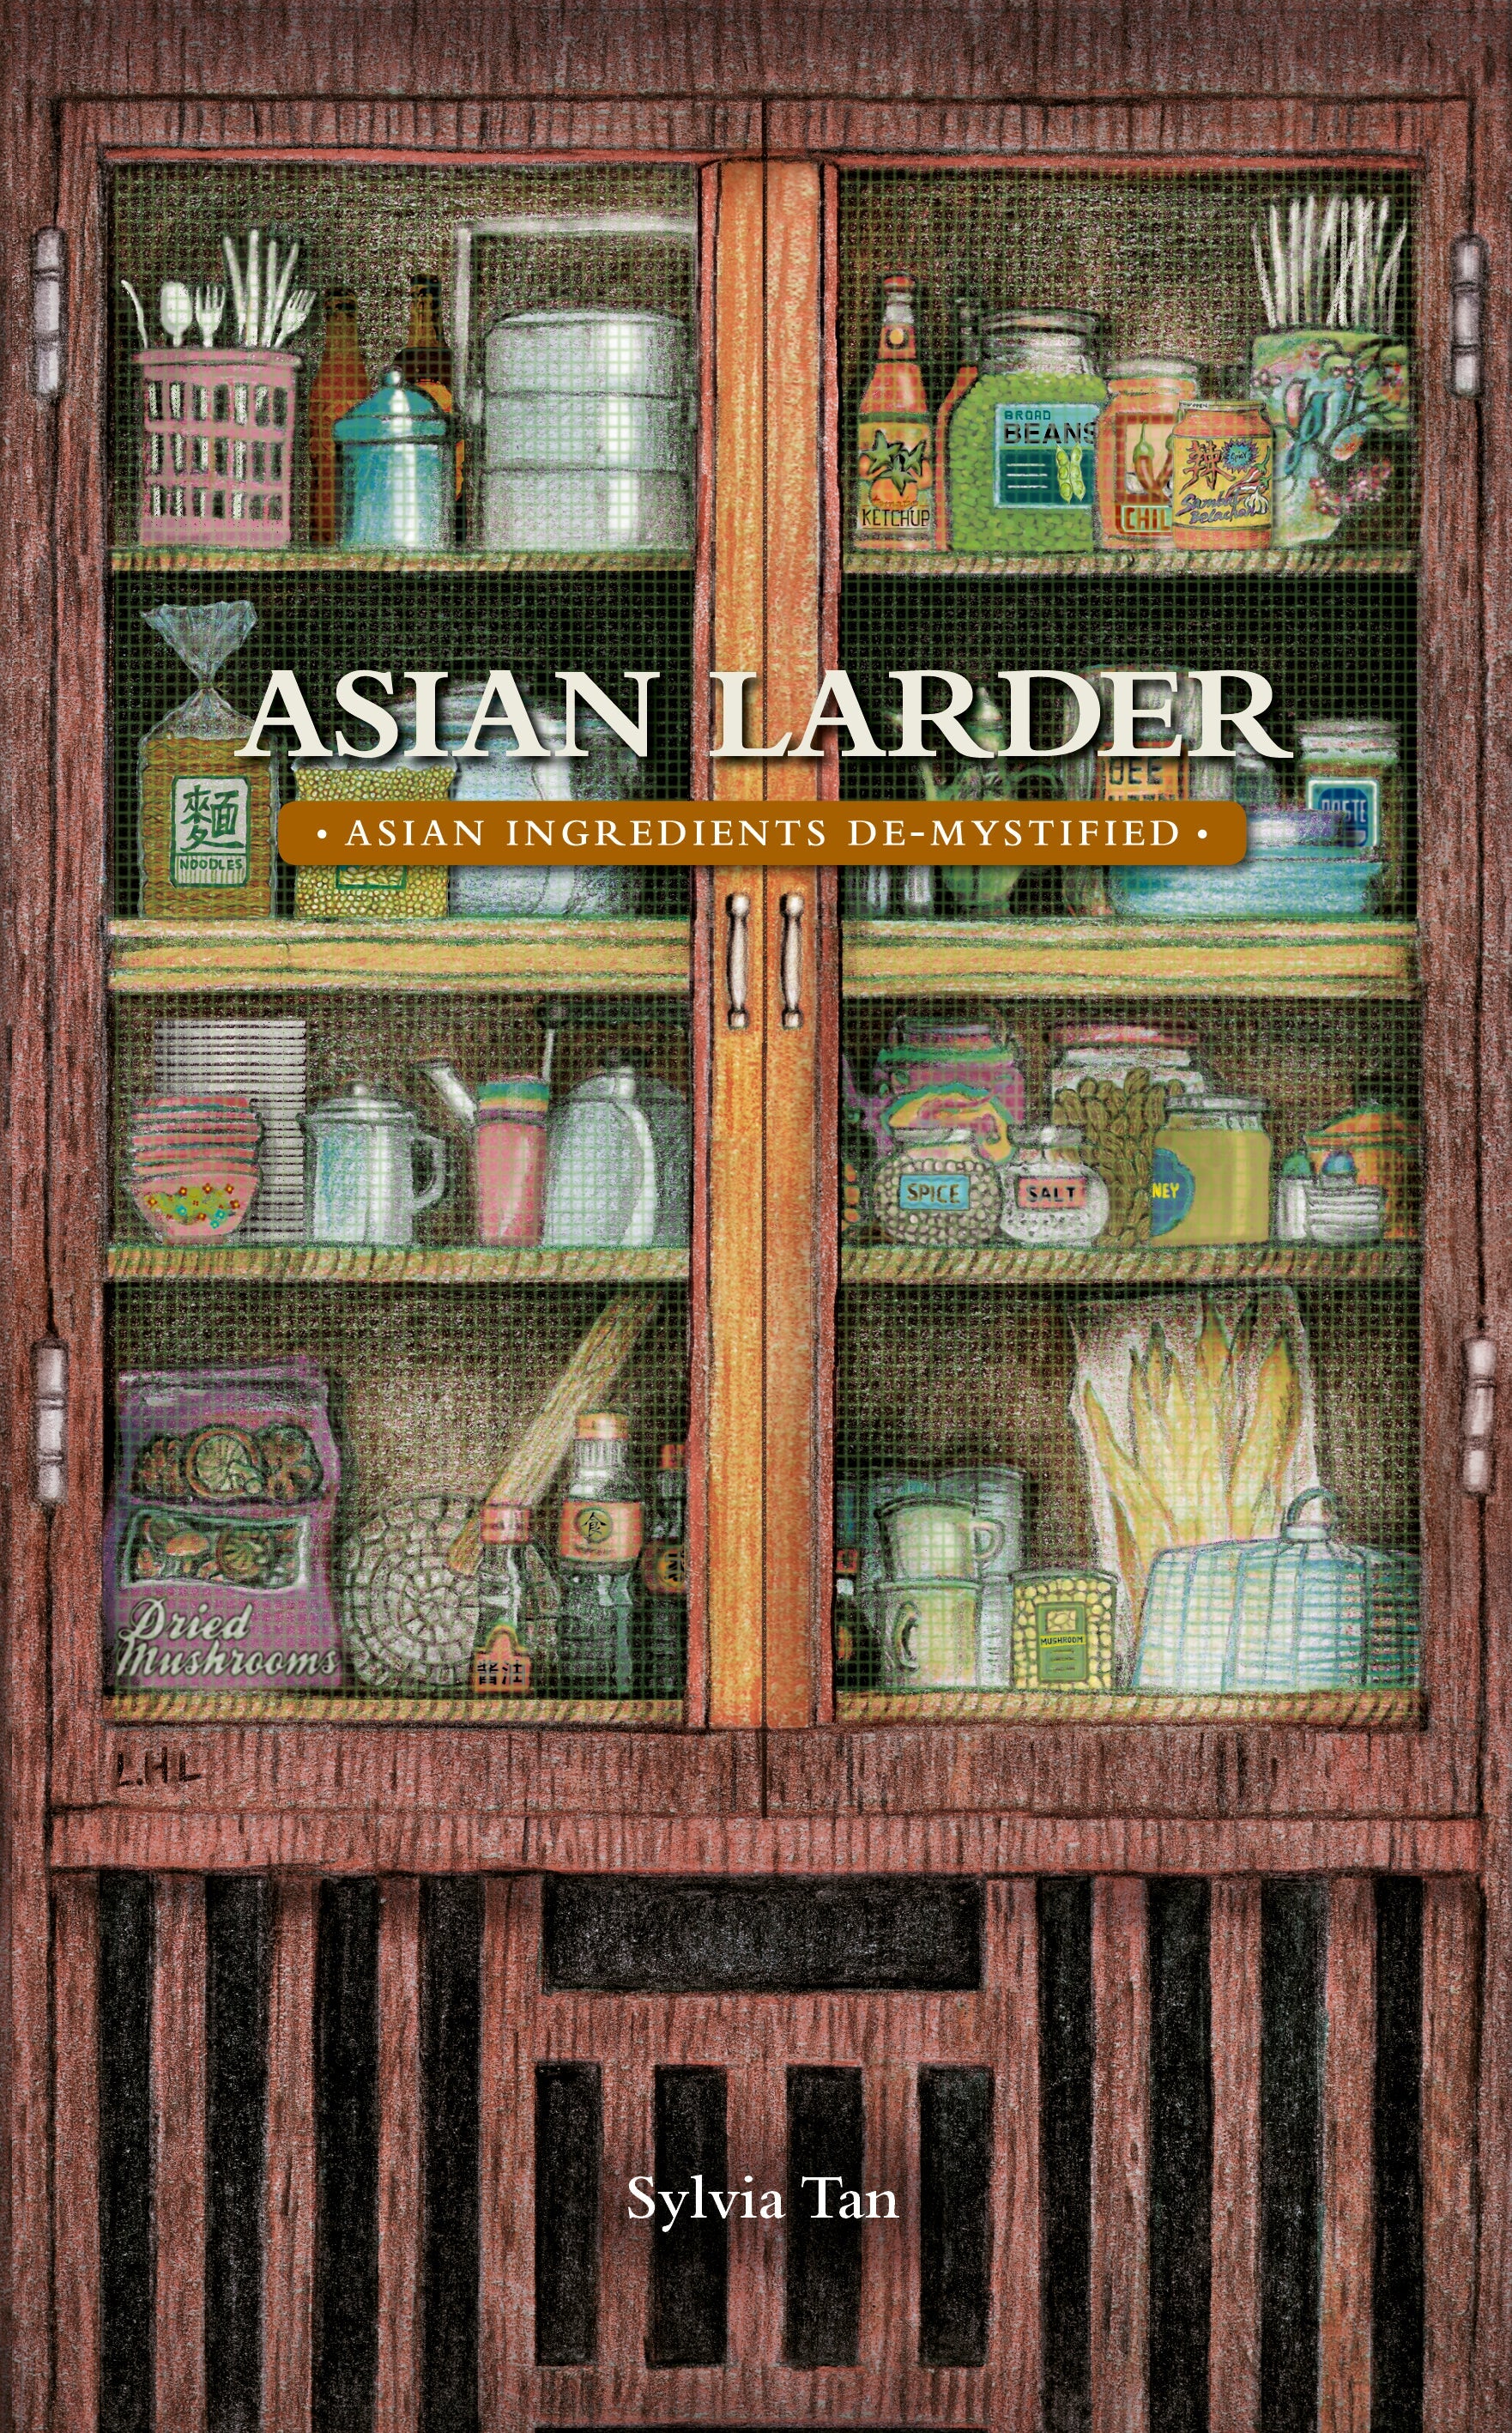 Asian Larder: Asian Ingredients De-Mystified